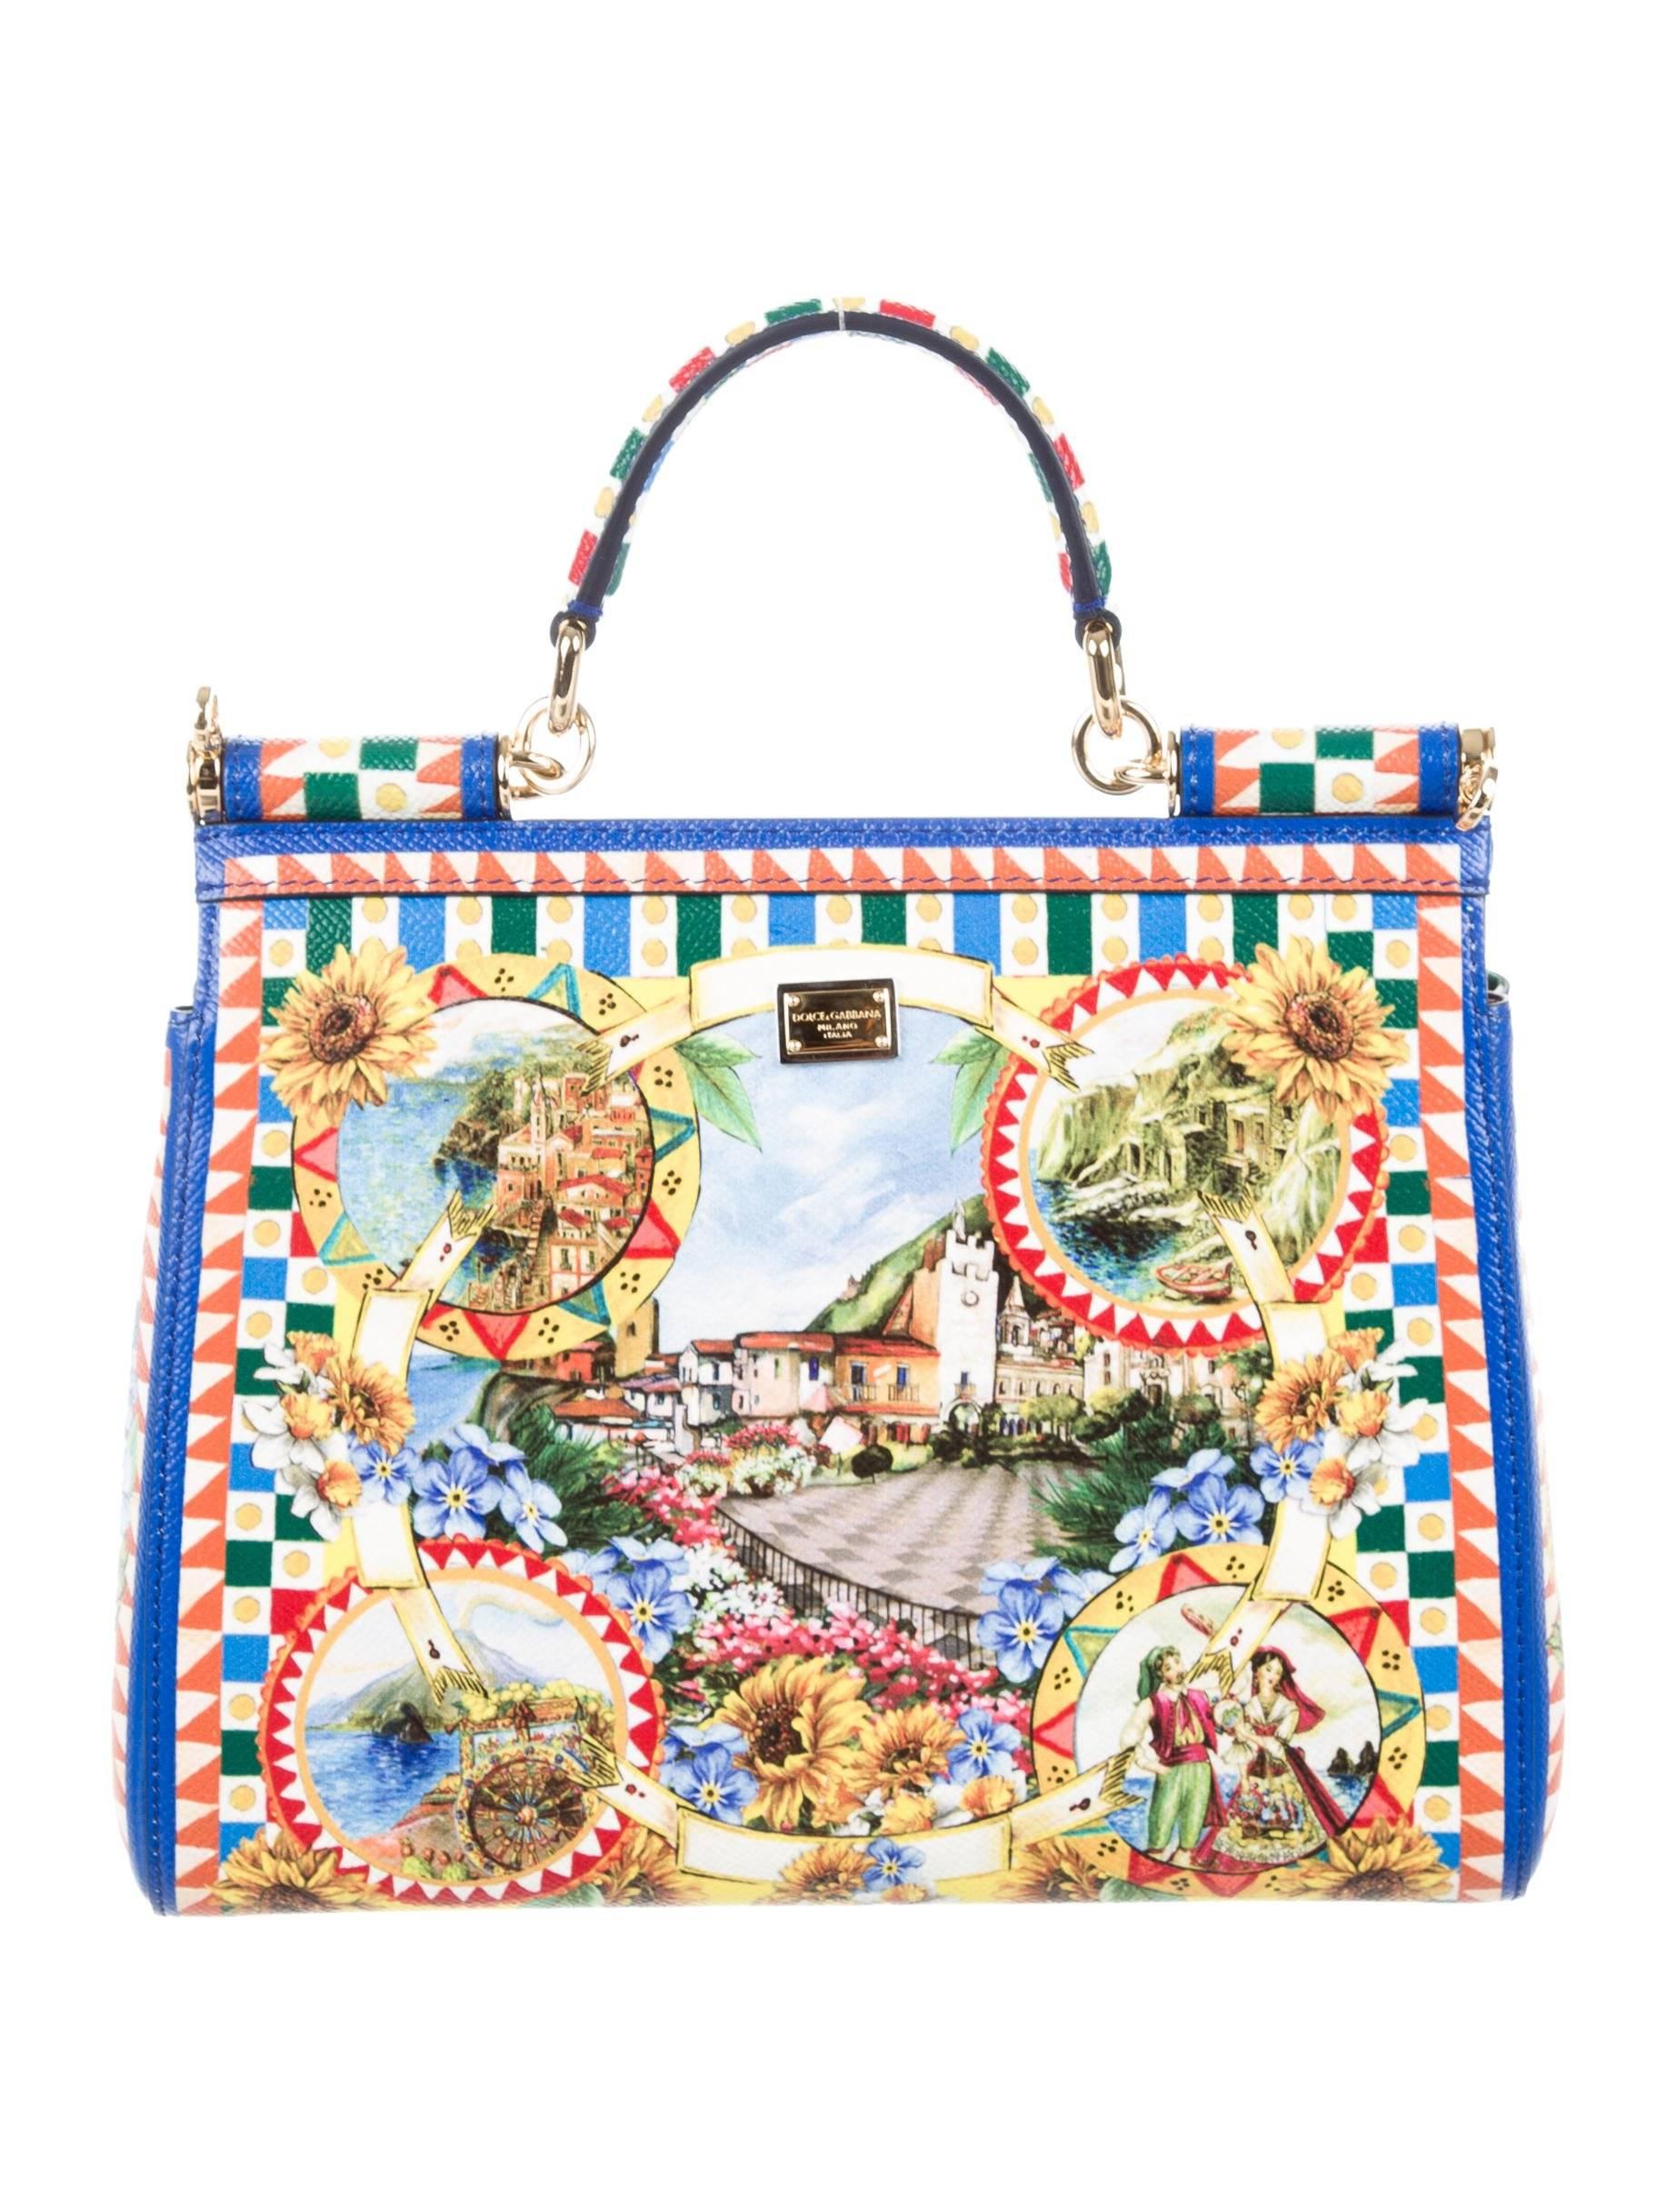 Beige Dolce & Gabbana Runway Printed Kelly Style Top Handle Satchel Shoulder Bag